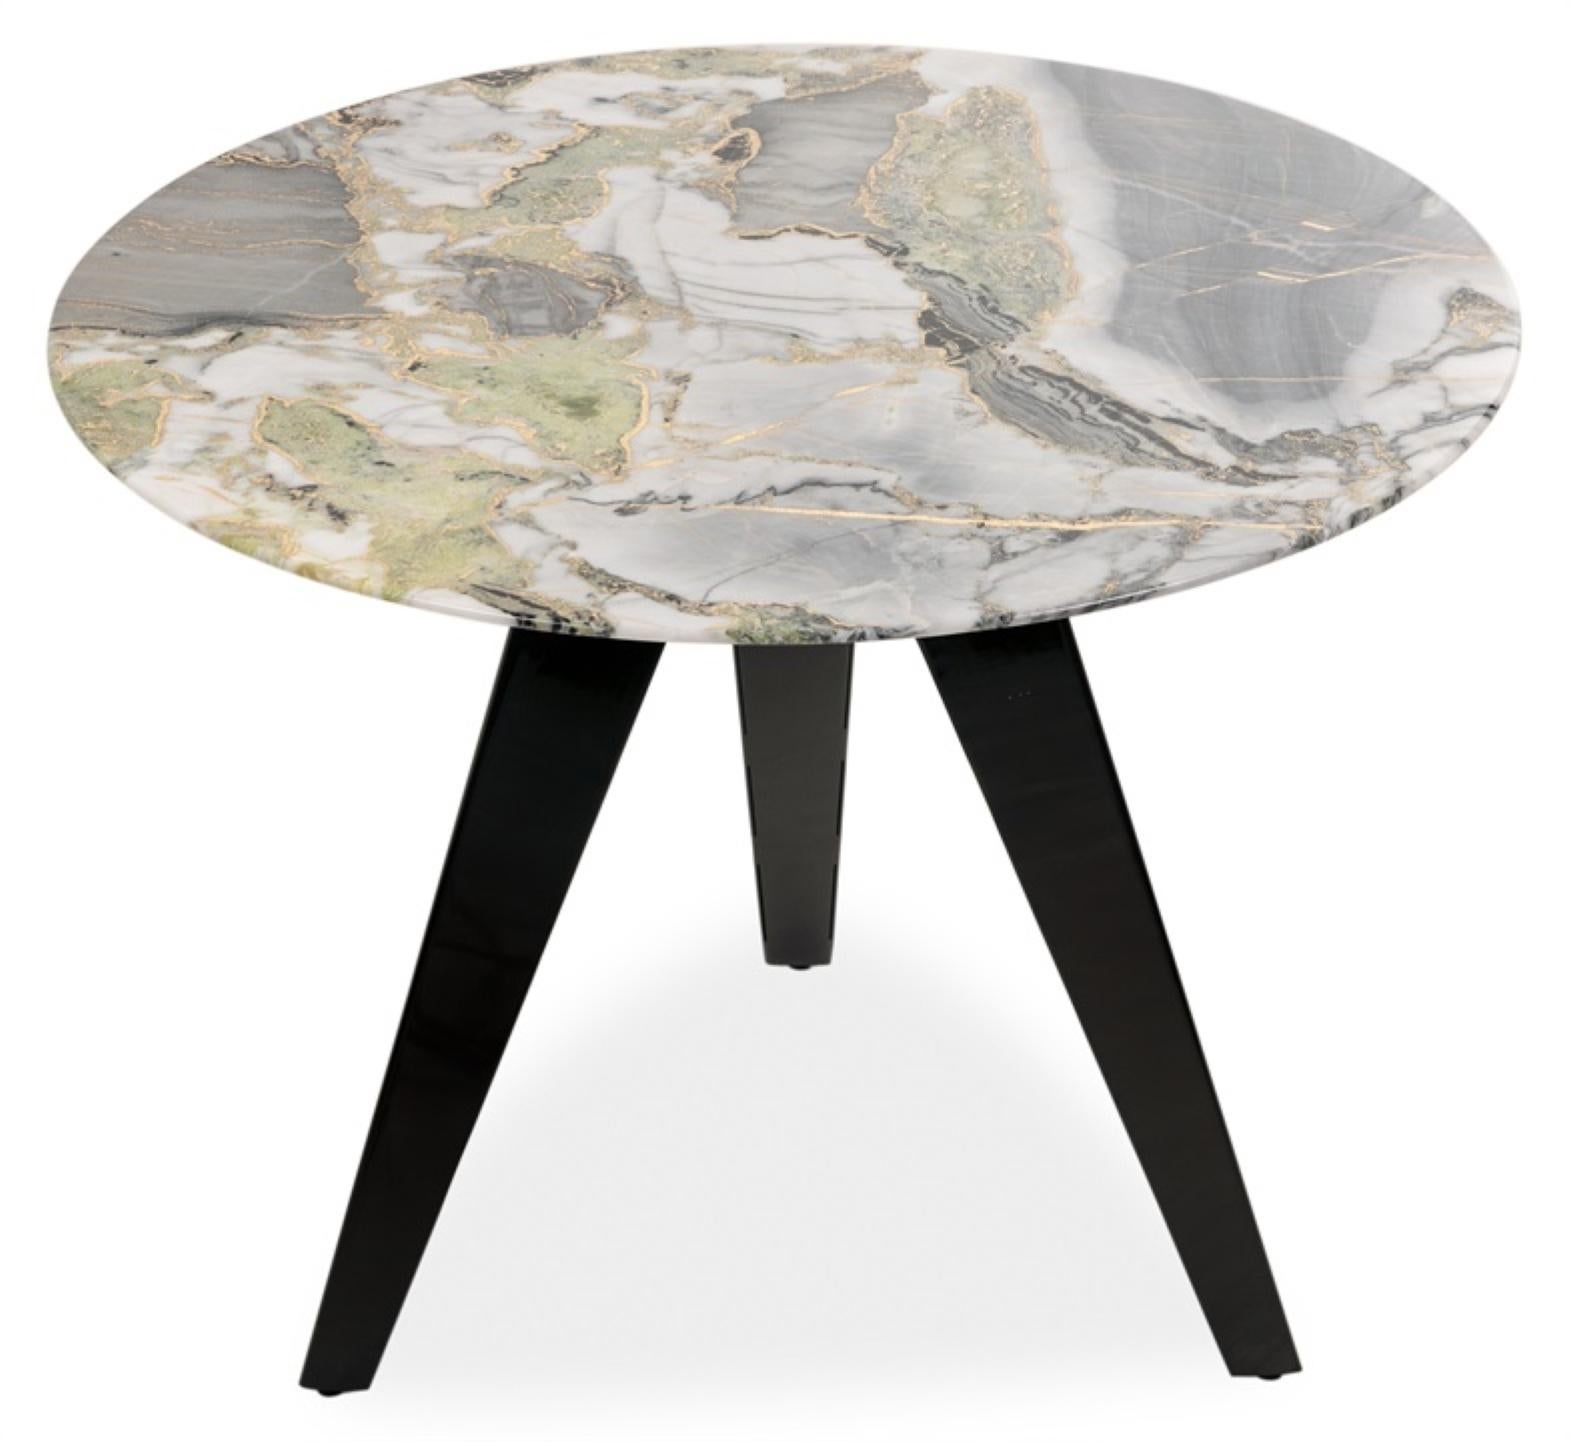 Une table d'appoint ronde équilibrée mais passionnante, fabriquée à la main avec un savoir-faire exceptionnel. Disponible dans un marbre blanc de Chine gravé avec la technique de l'araignée. Orné d'incrustations de feuilles de métal doré accentuant